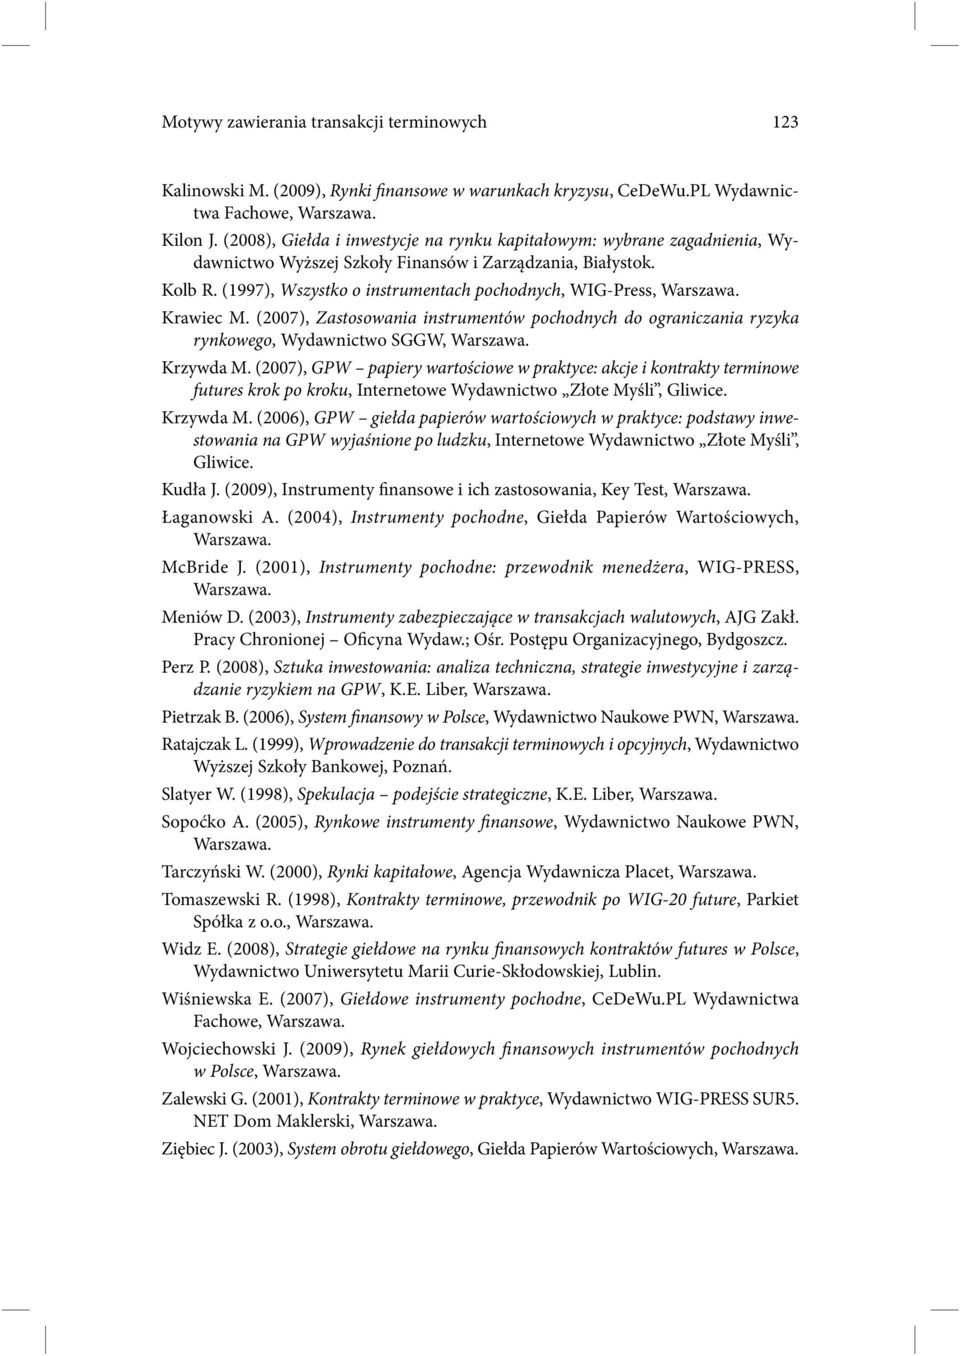 (1997), Wszystko o instrumentach pochodnych, WIG-Press, Krawiec M. (2007), Zastosowania instrumentów pochodnych do ograniczania ryzyka rynkowego, Wydawnictwo SGGW, Krzywda M.